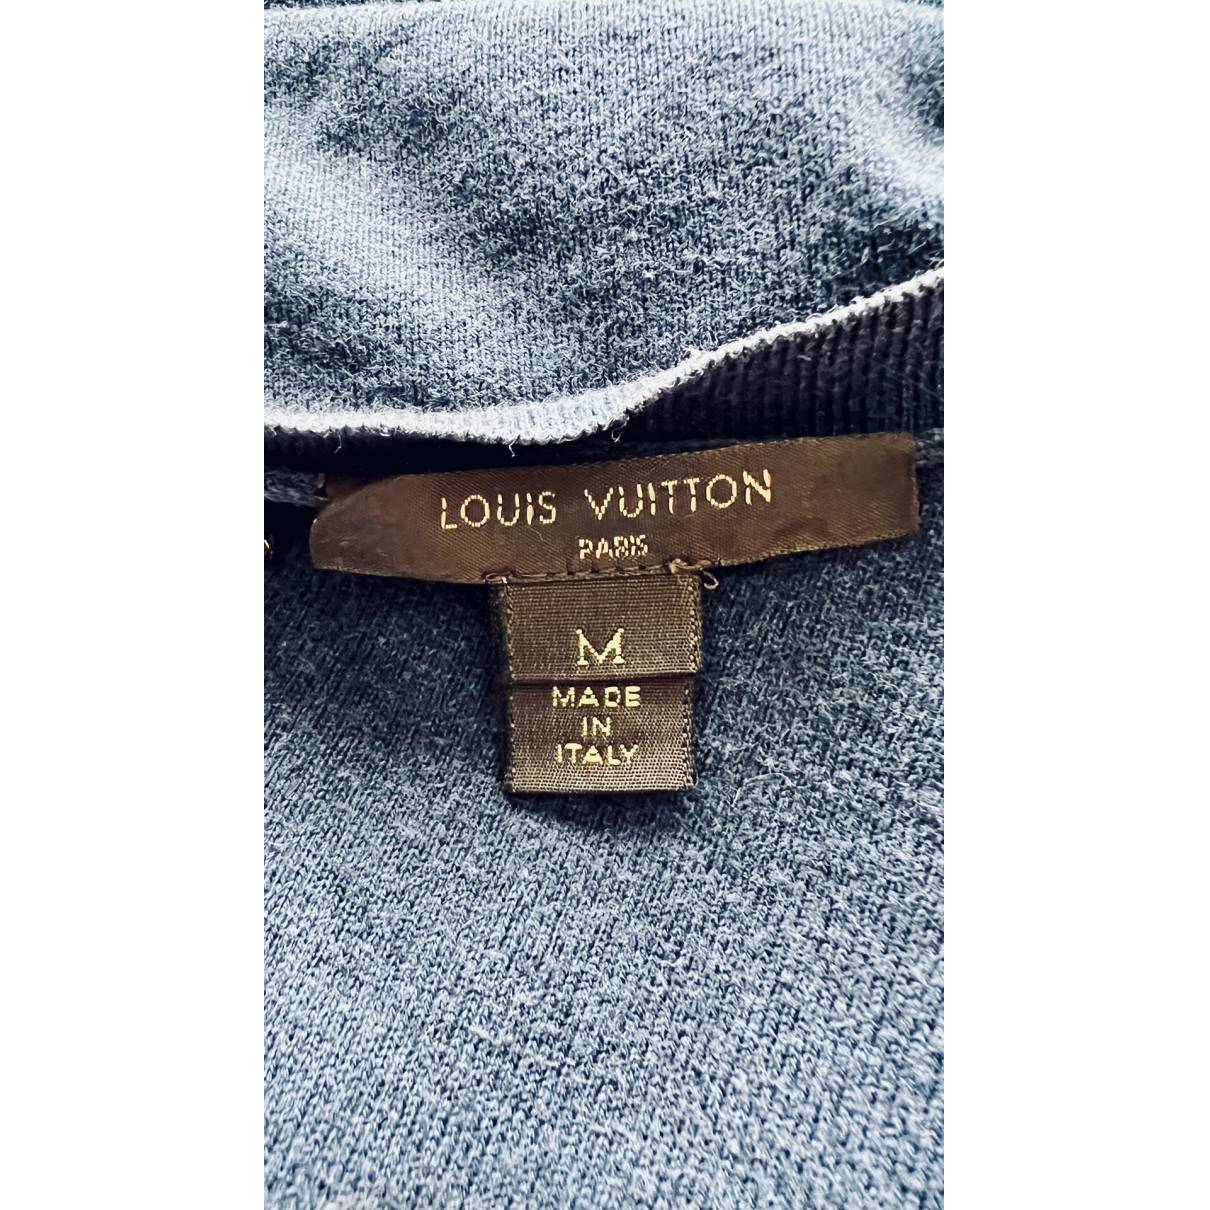 Louis Vuitton - Authenticated Knitwear - Cotton Blue Plain for Women, Good Condition